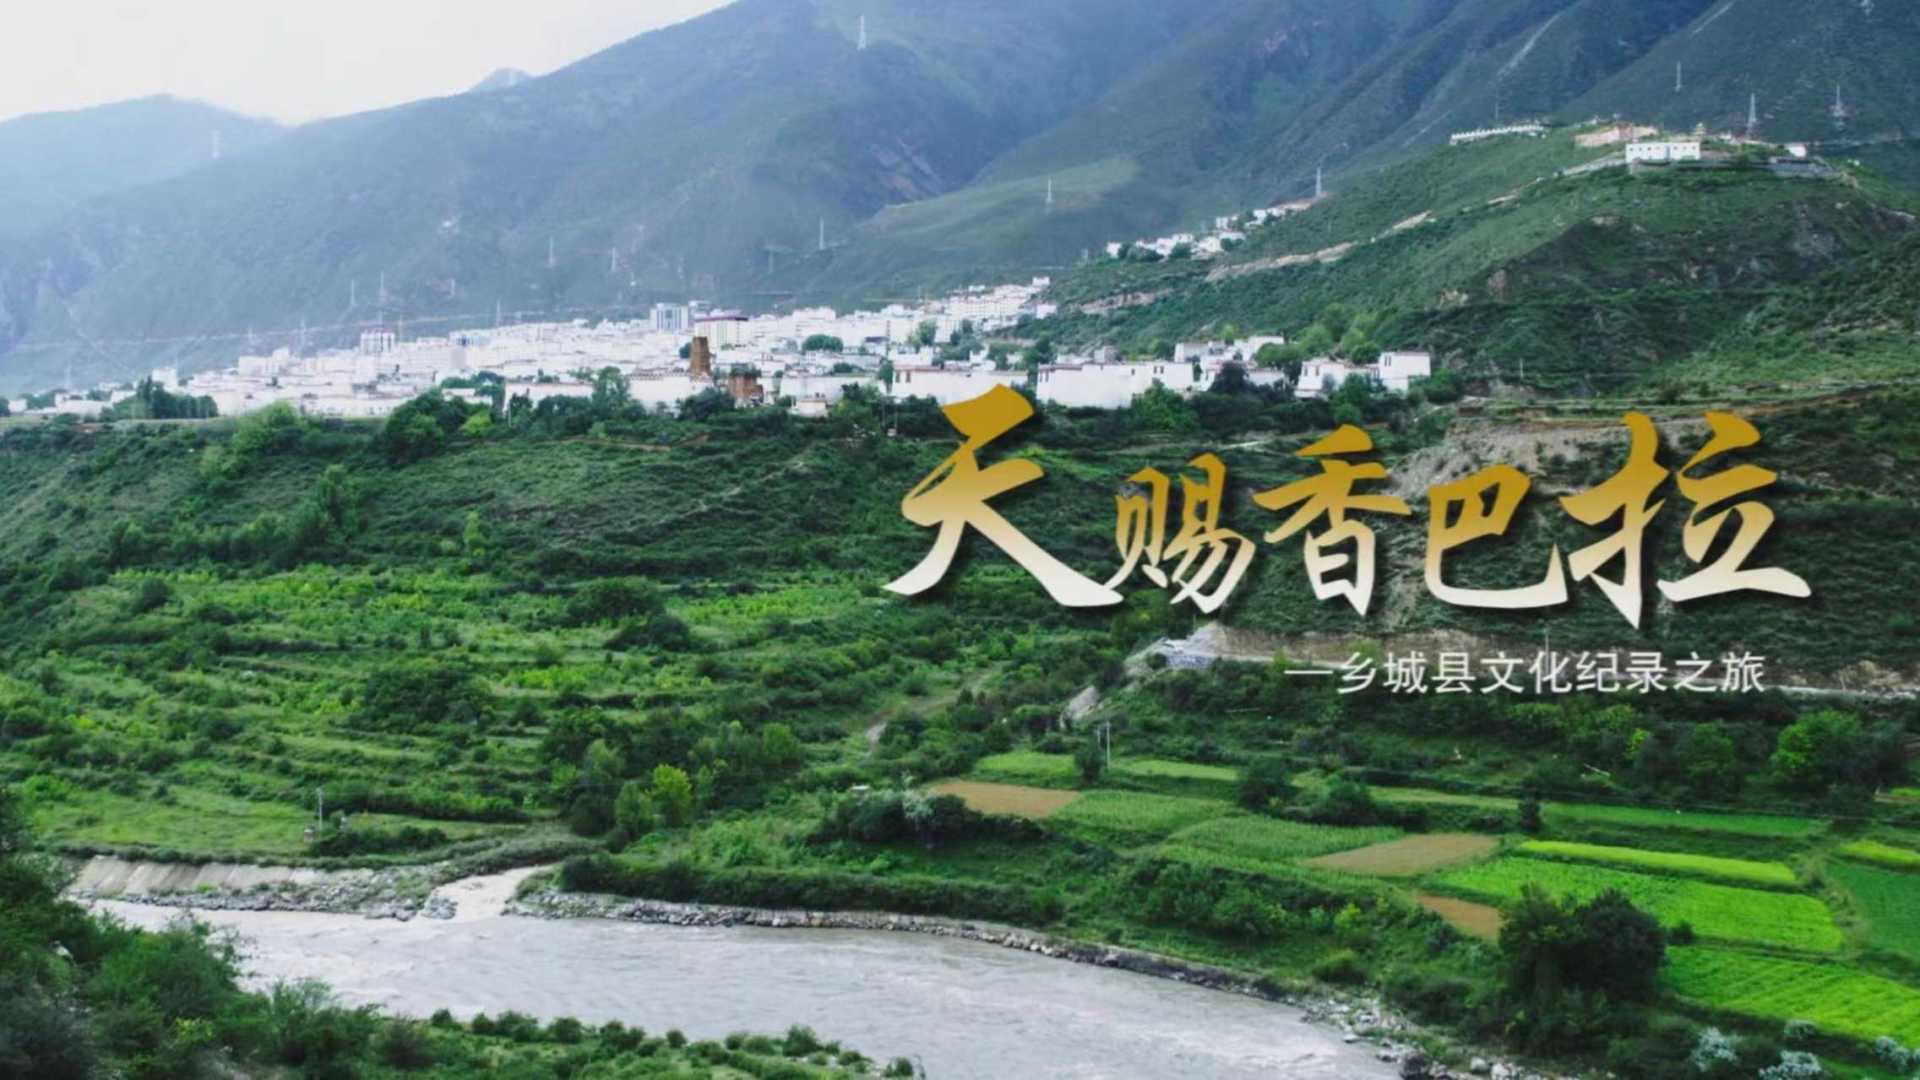 藏区纪录片《天赐香巴拉》